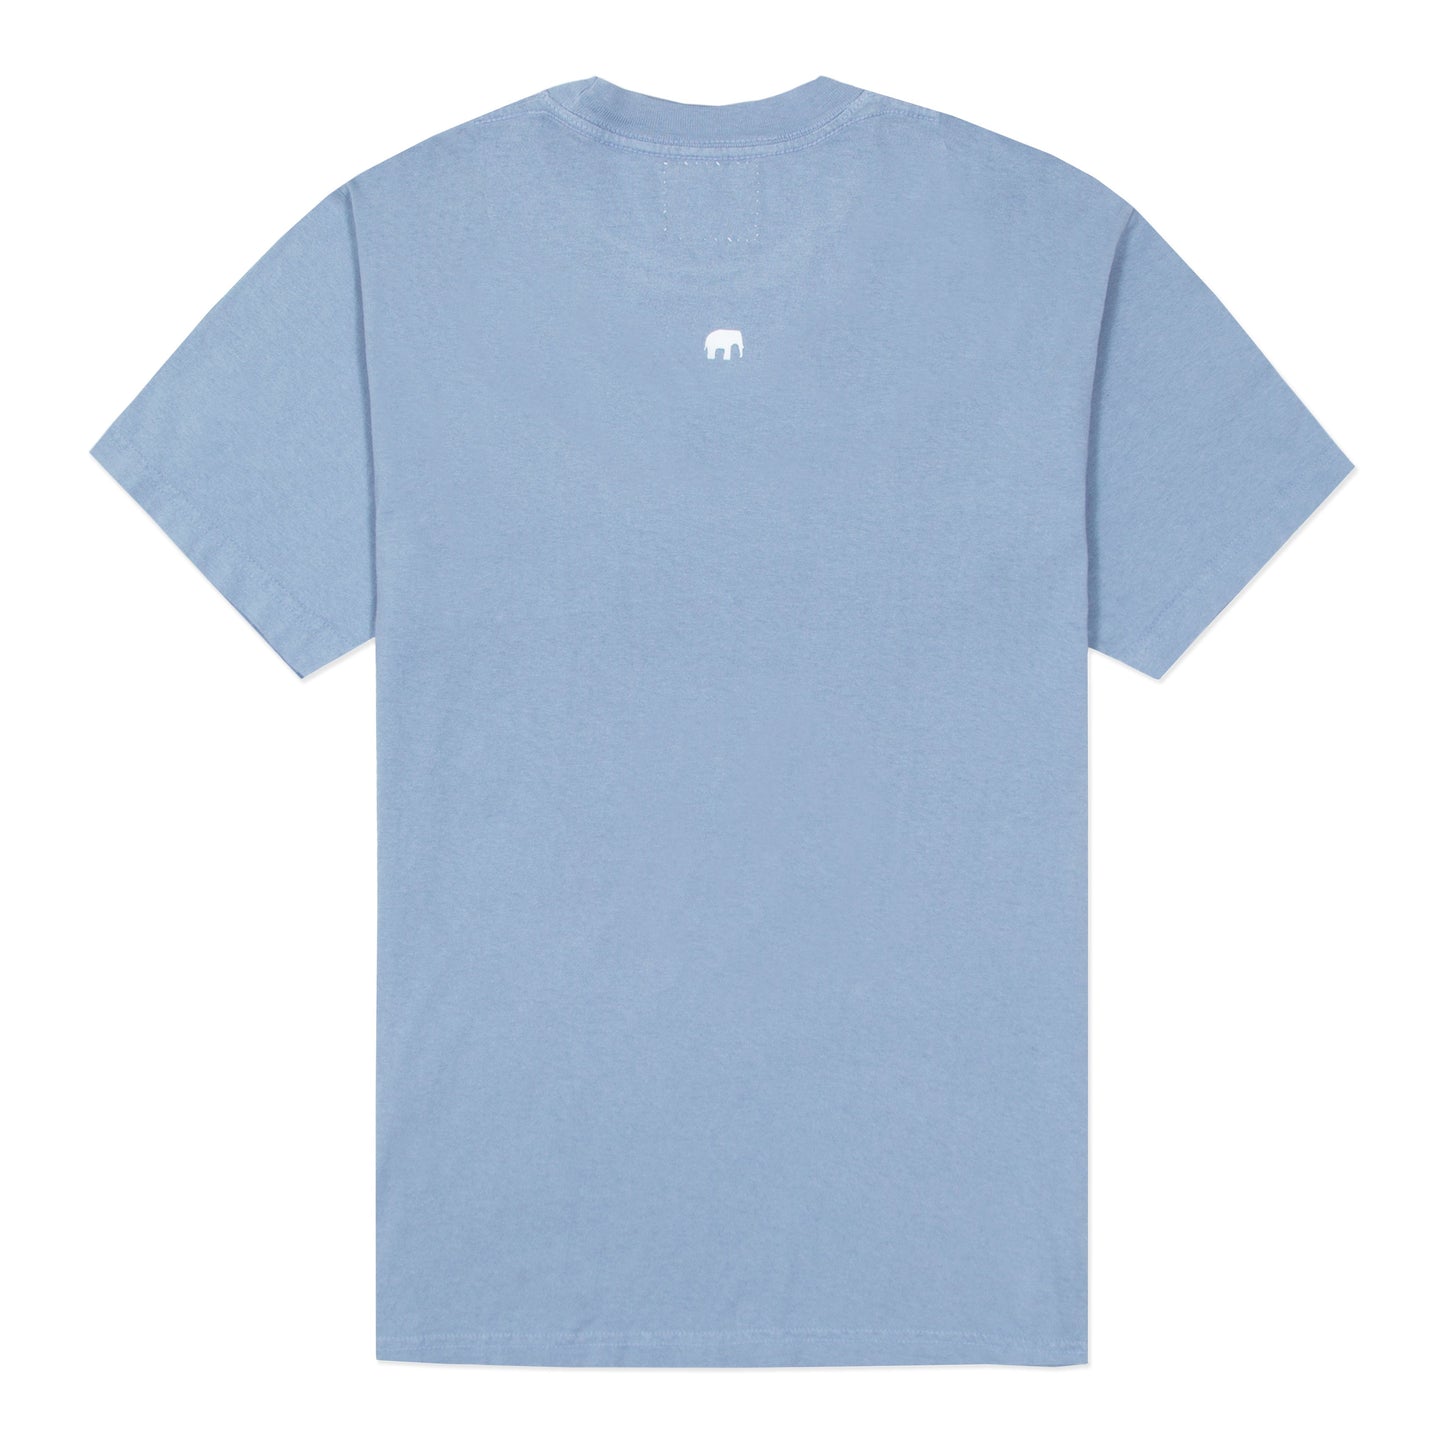 Light Blue t-shirt with "LFANT" elephant logo on the back.